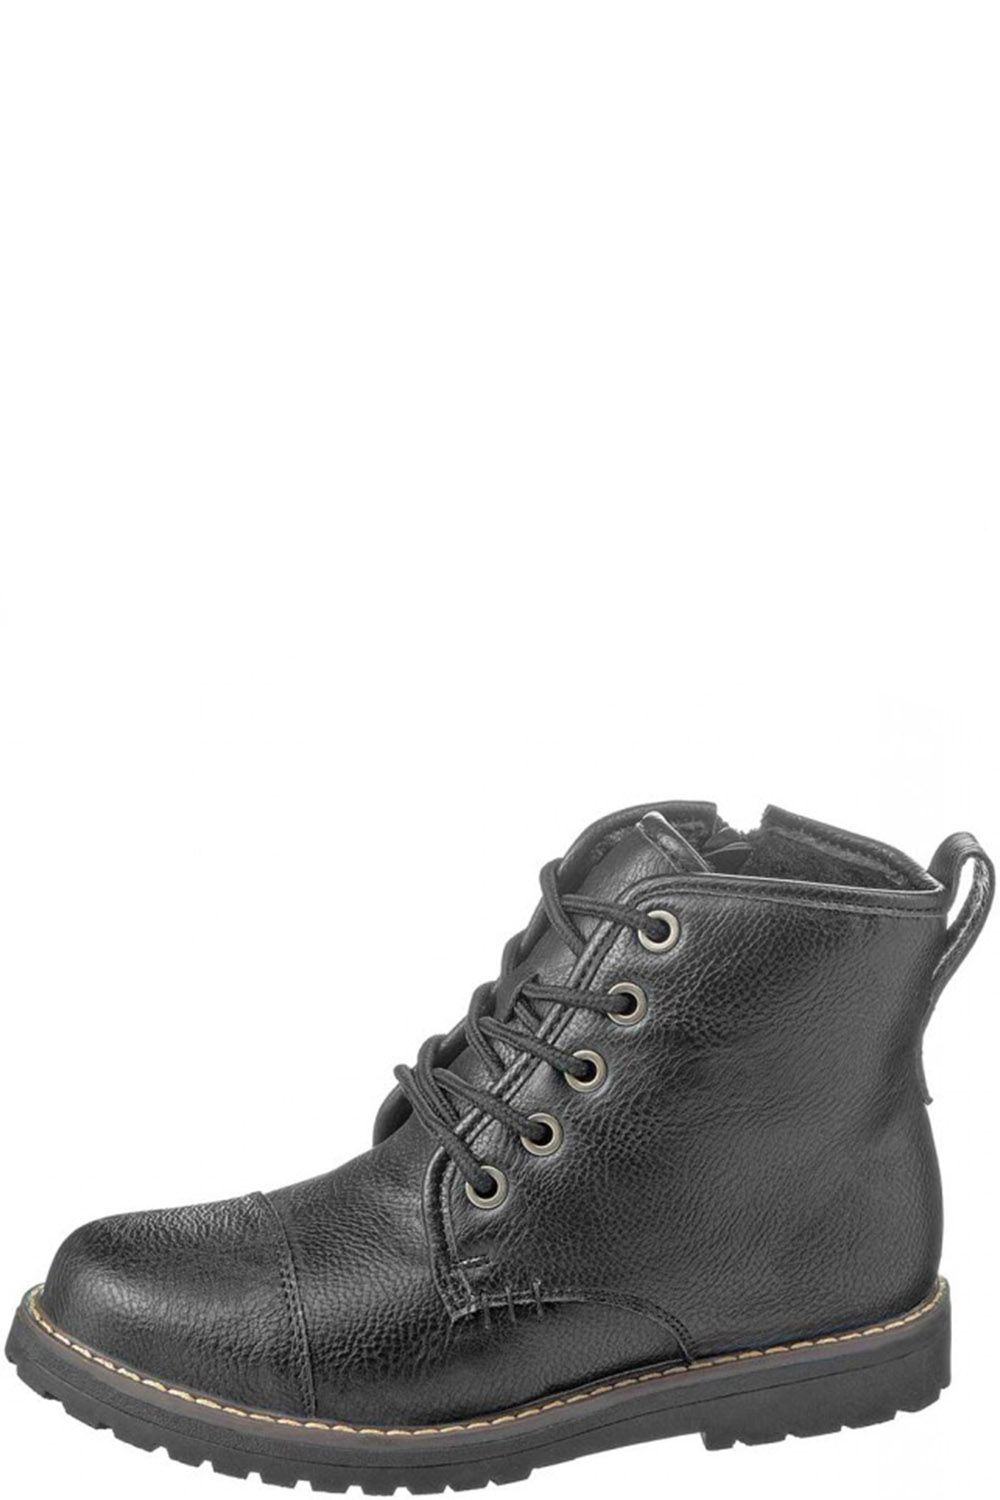 Ботинки Keddo, размер 37, цвет черный 568836/01-02 - фото 1